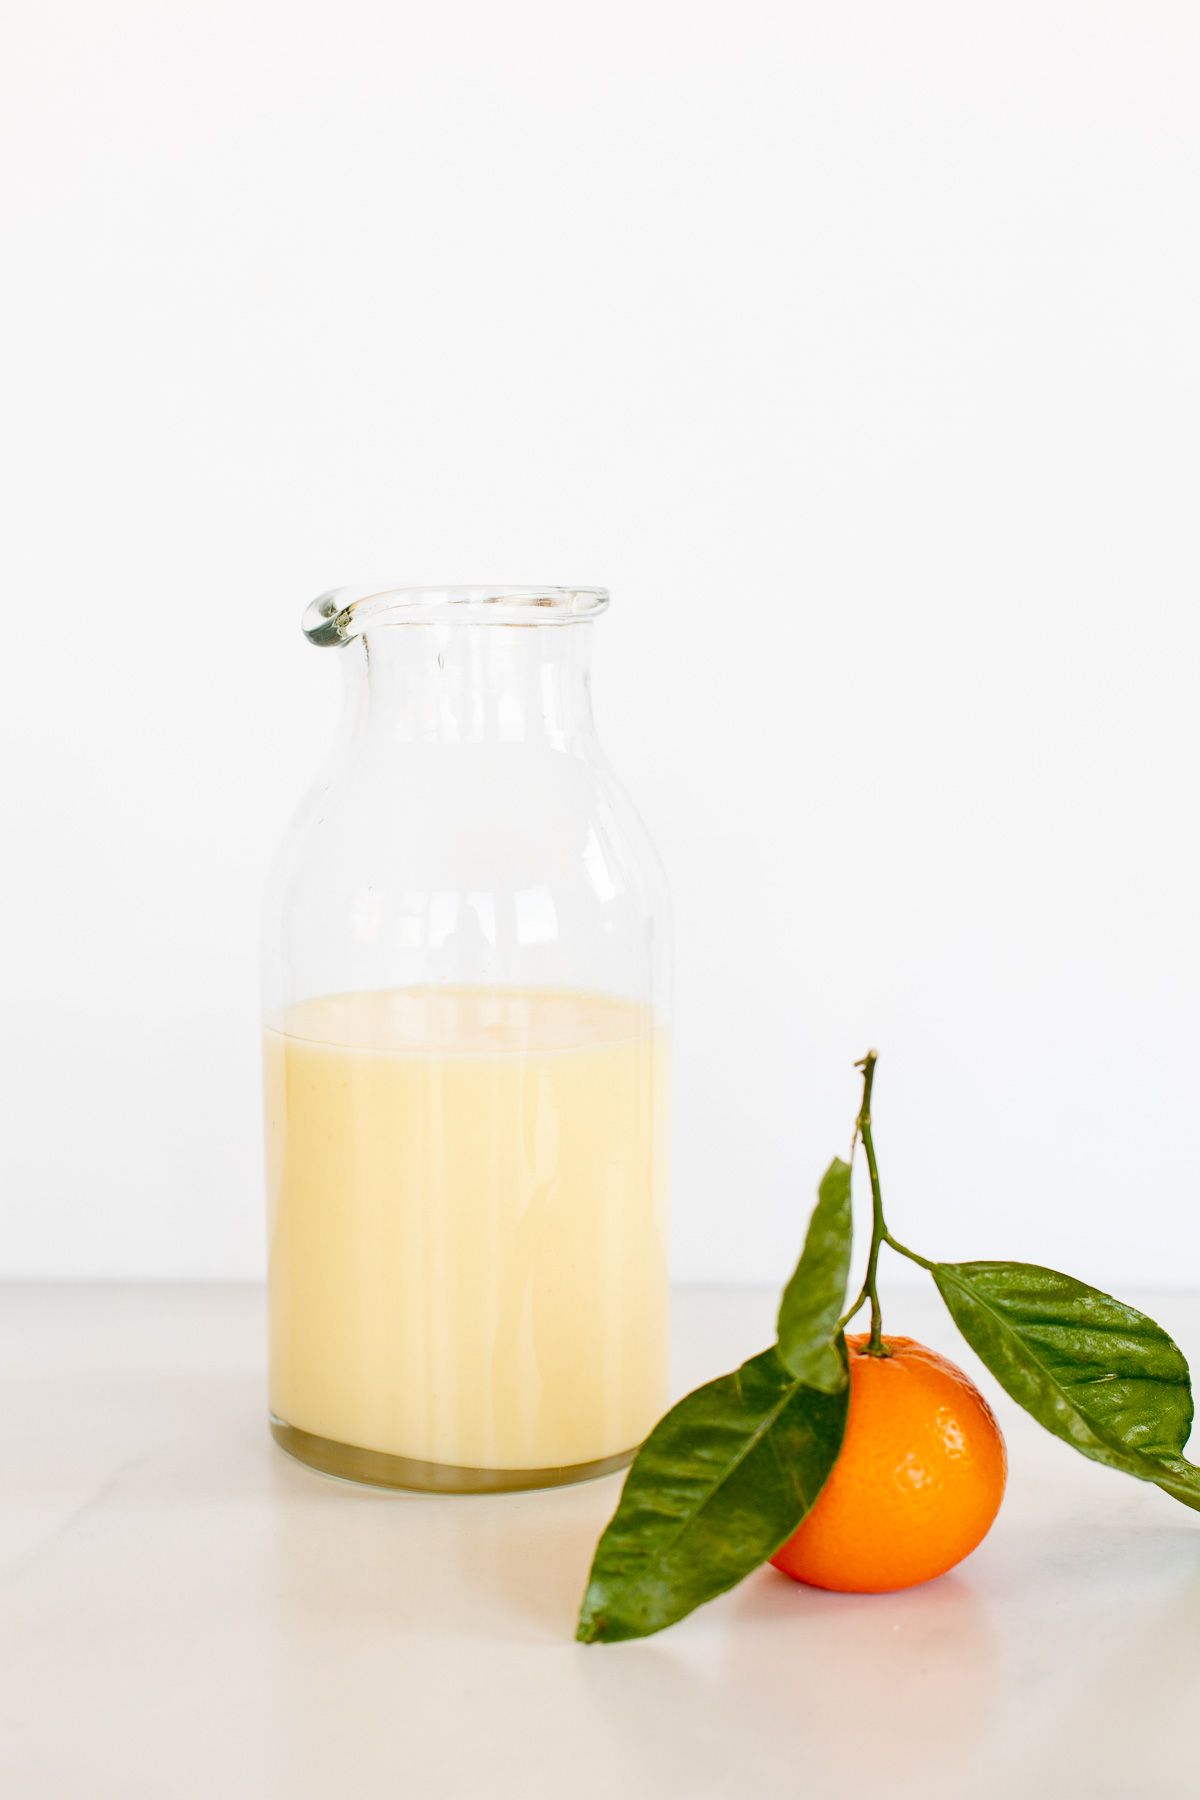 A clear glass jar of glaze with a single orange next to it. 